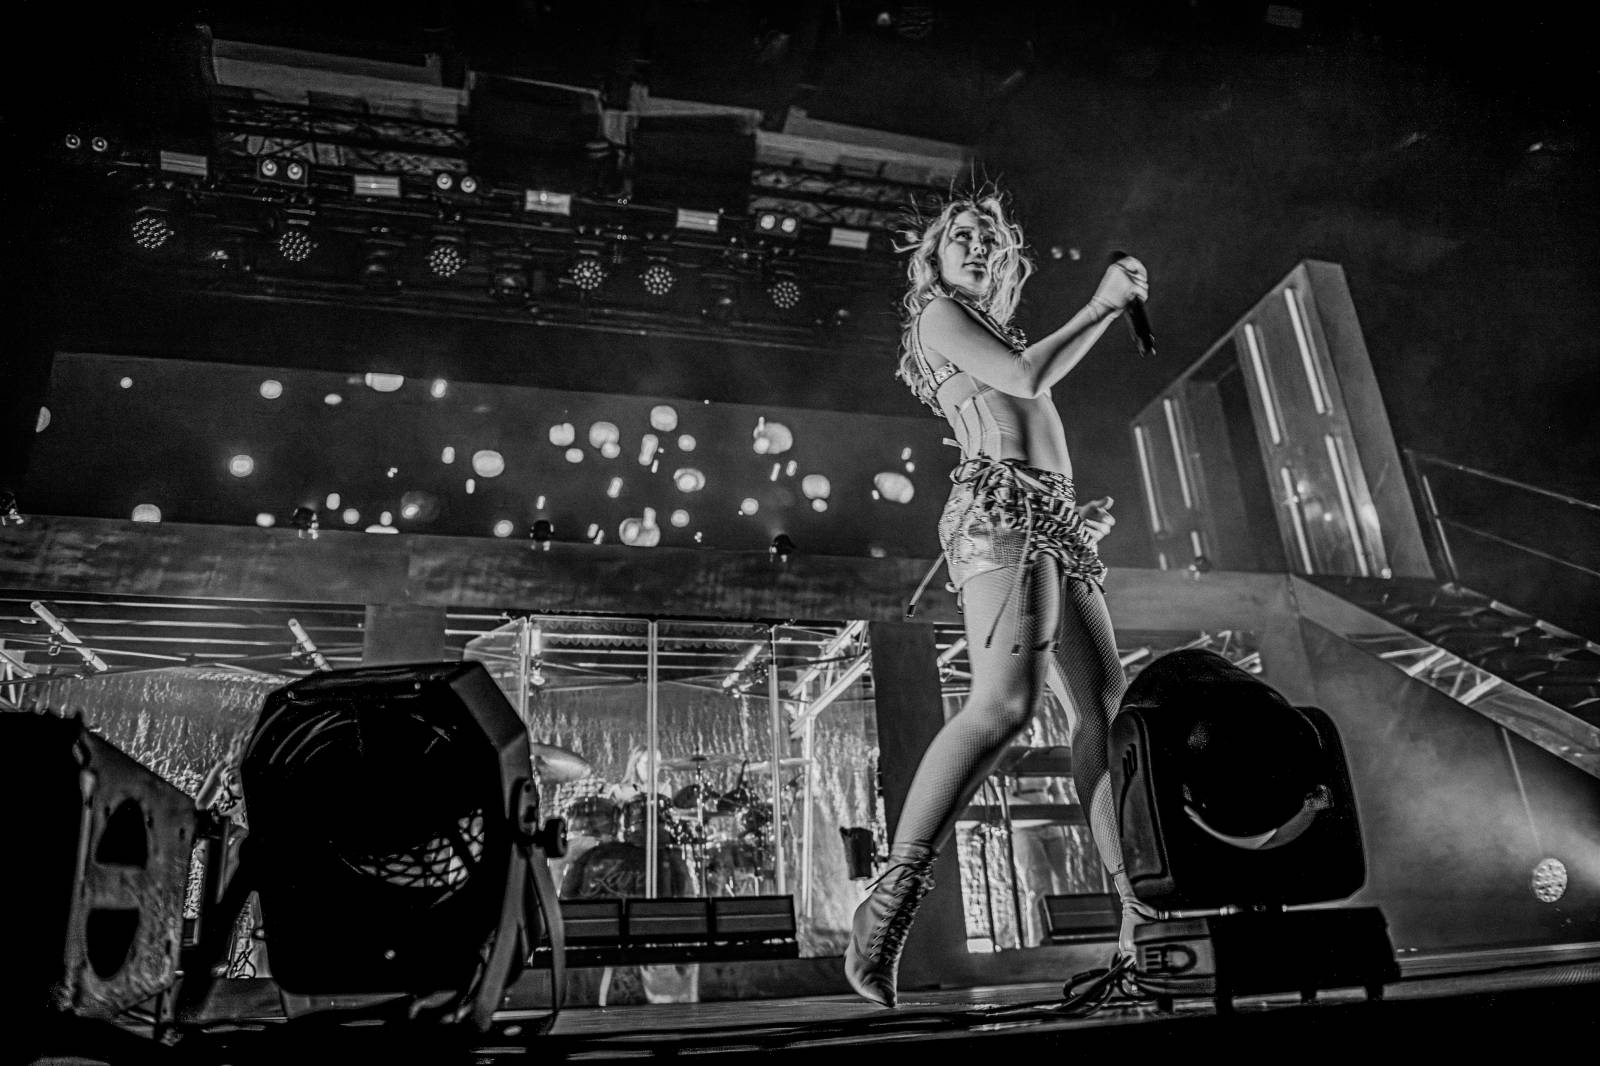 Zara Larsson předvedla v Praze sexy show plnou tance